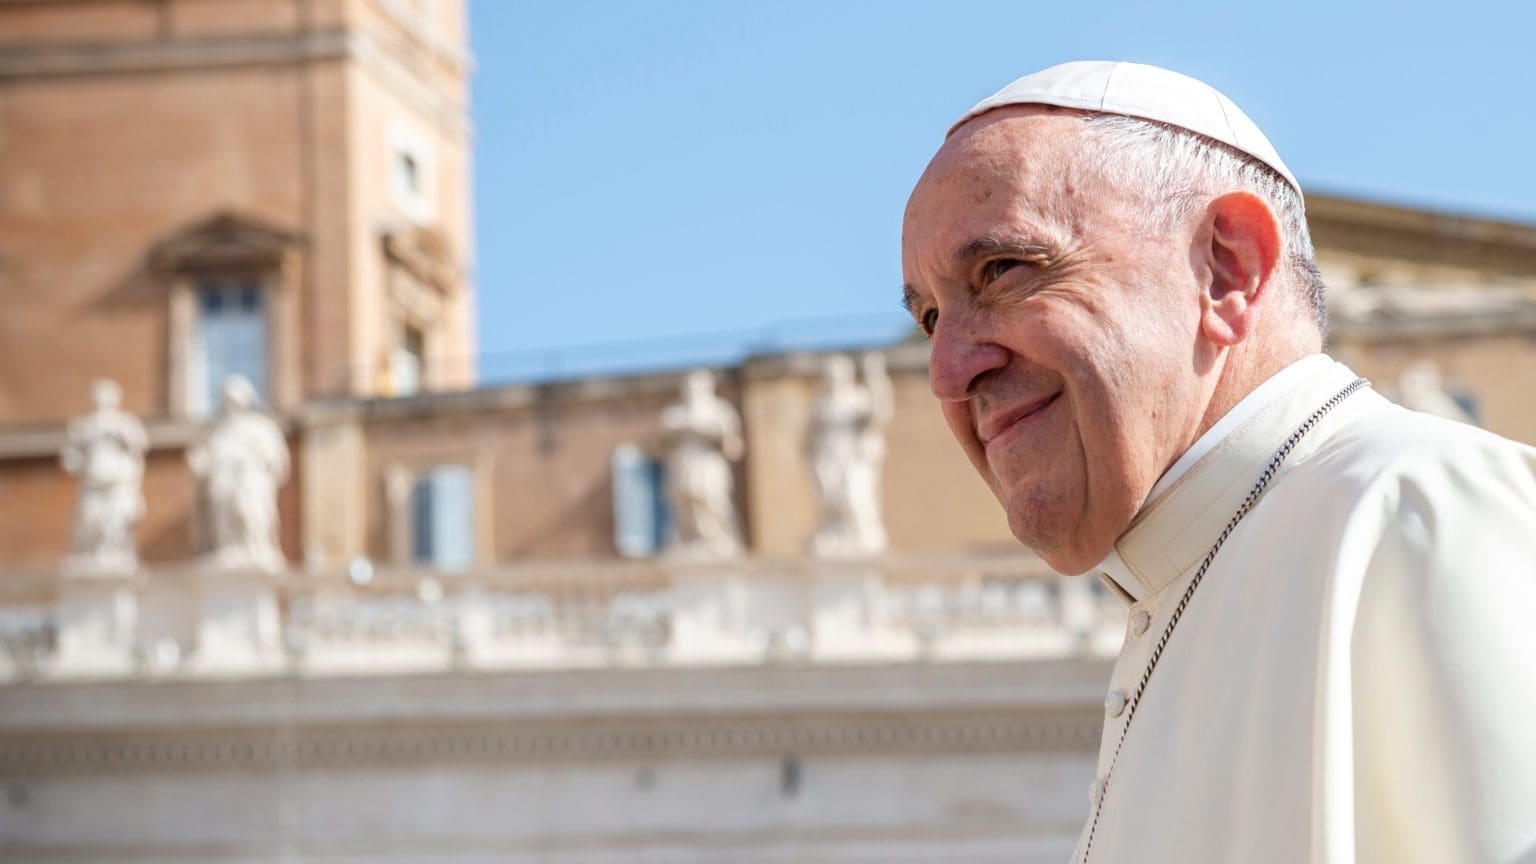 Ватикан опубликовал декларацию с папским учением о достоинстве человека, разъясняющую в том числе отношение церкви к ЛГБТ